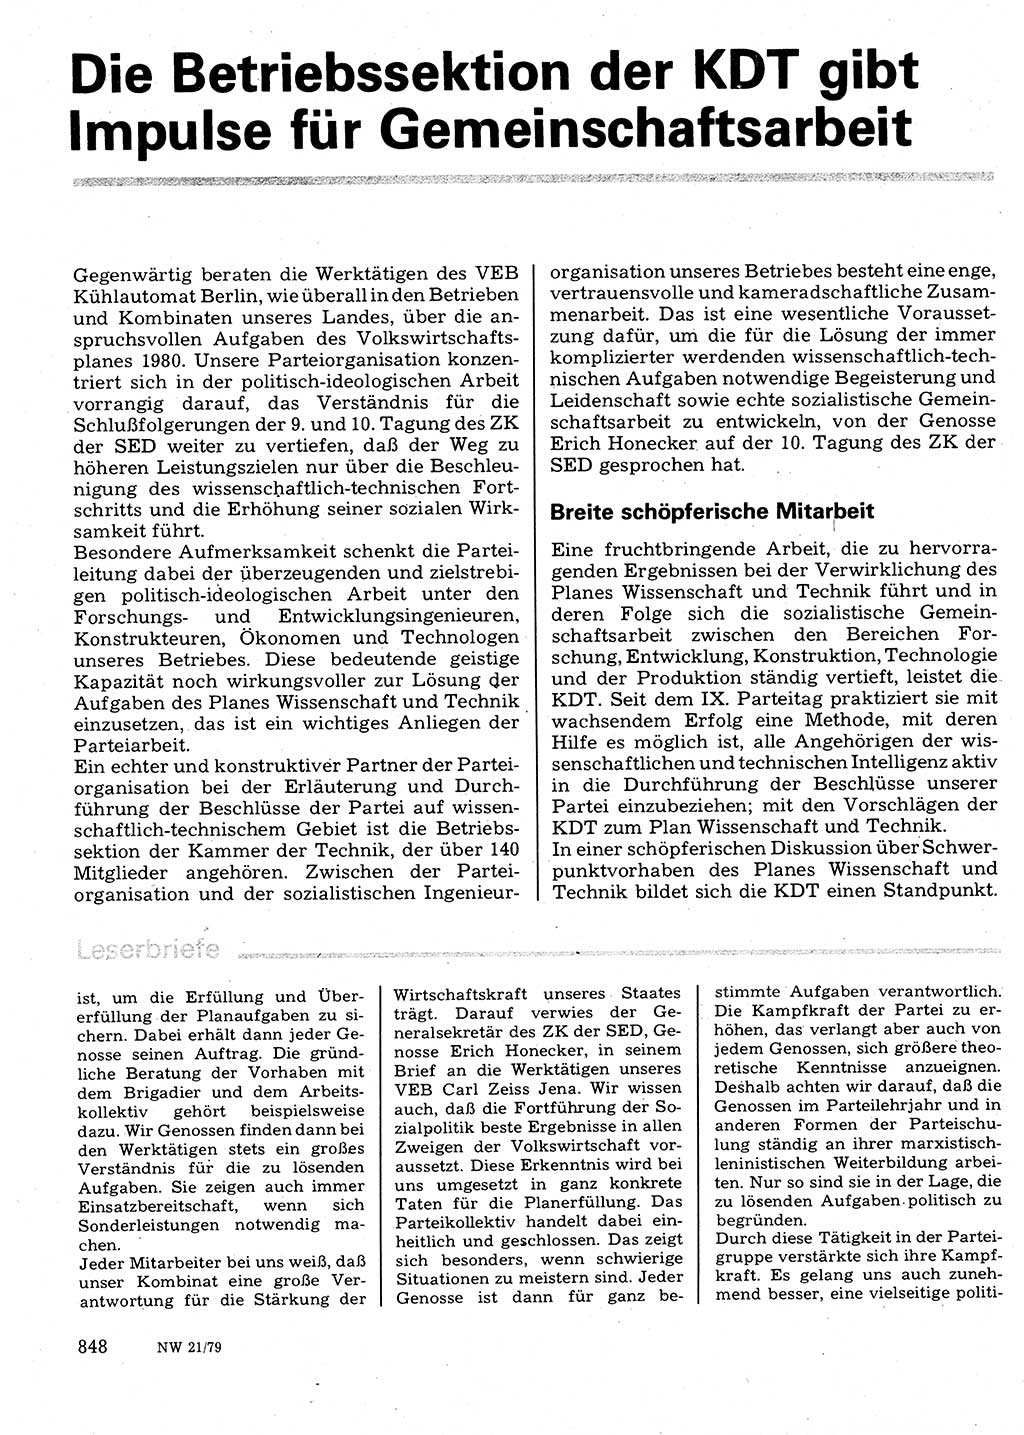 Neuer Weg (NW), Organ des Zentralkomitees (ZK) der SED (Sozialistische Einheitspartei Deutschlands) für Fragen des Parteilebens, 34. Jahrgang [Deutsche Demokratische Republik (DDR)] 1979, Seite 848 (NW ZK SED DDR 1979, S. 848)